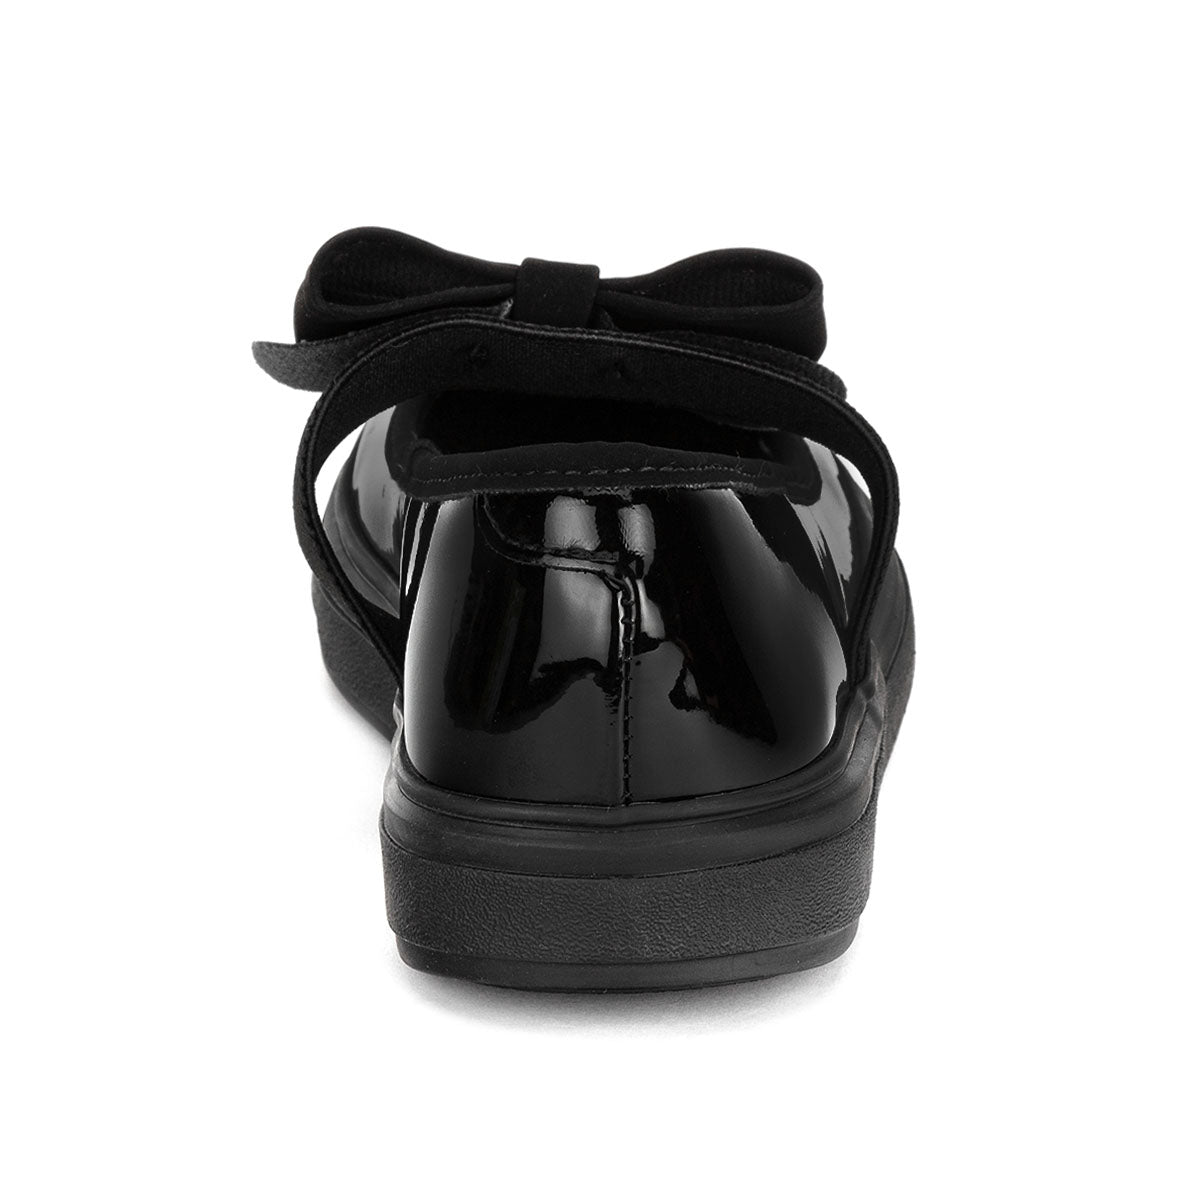 Zapato Clásico Negro Moño Joven Karsten 03501